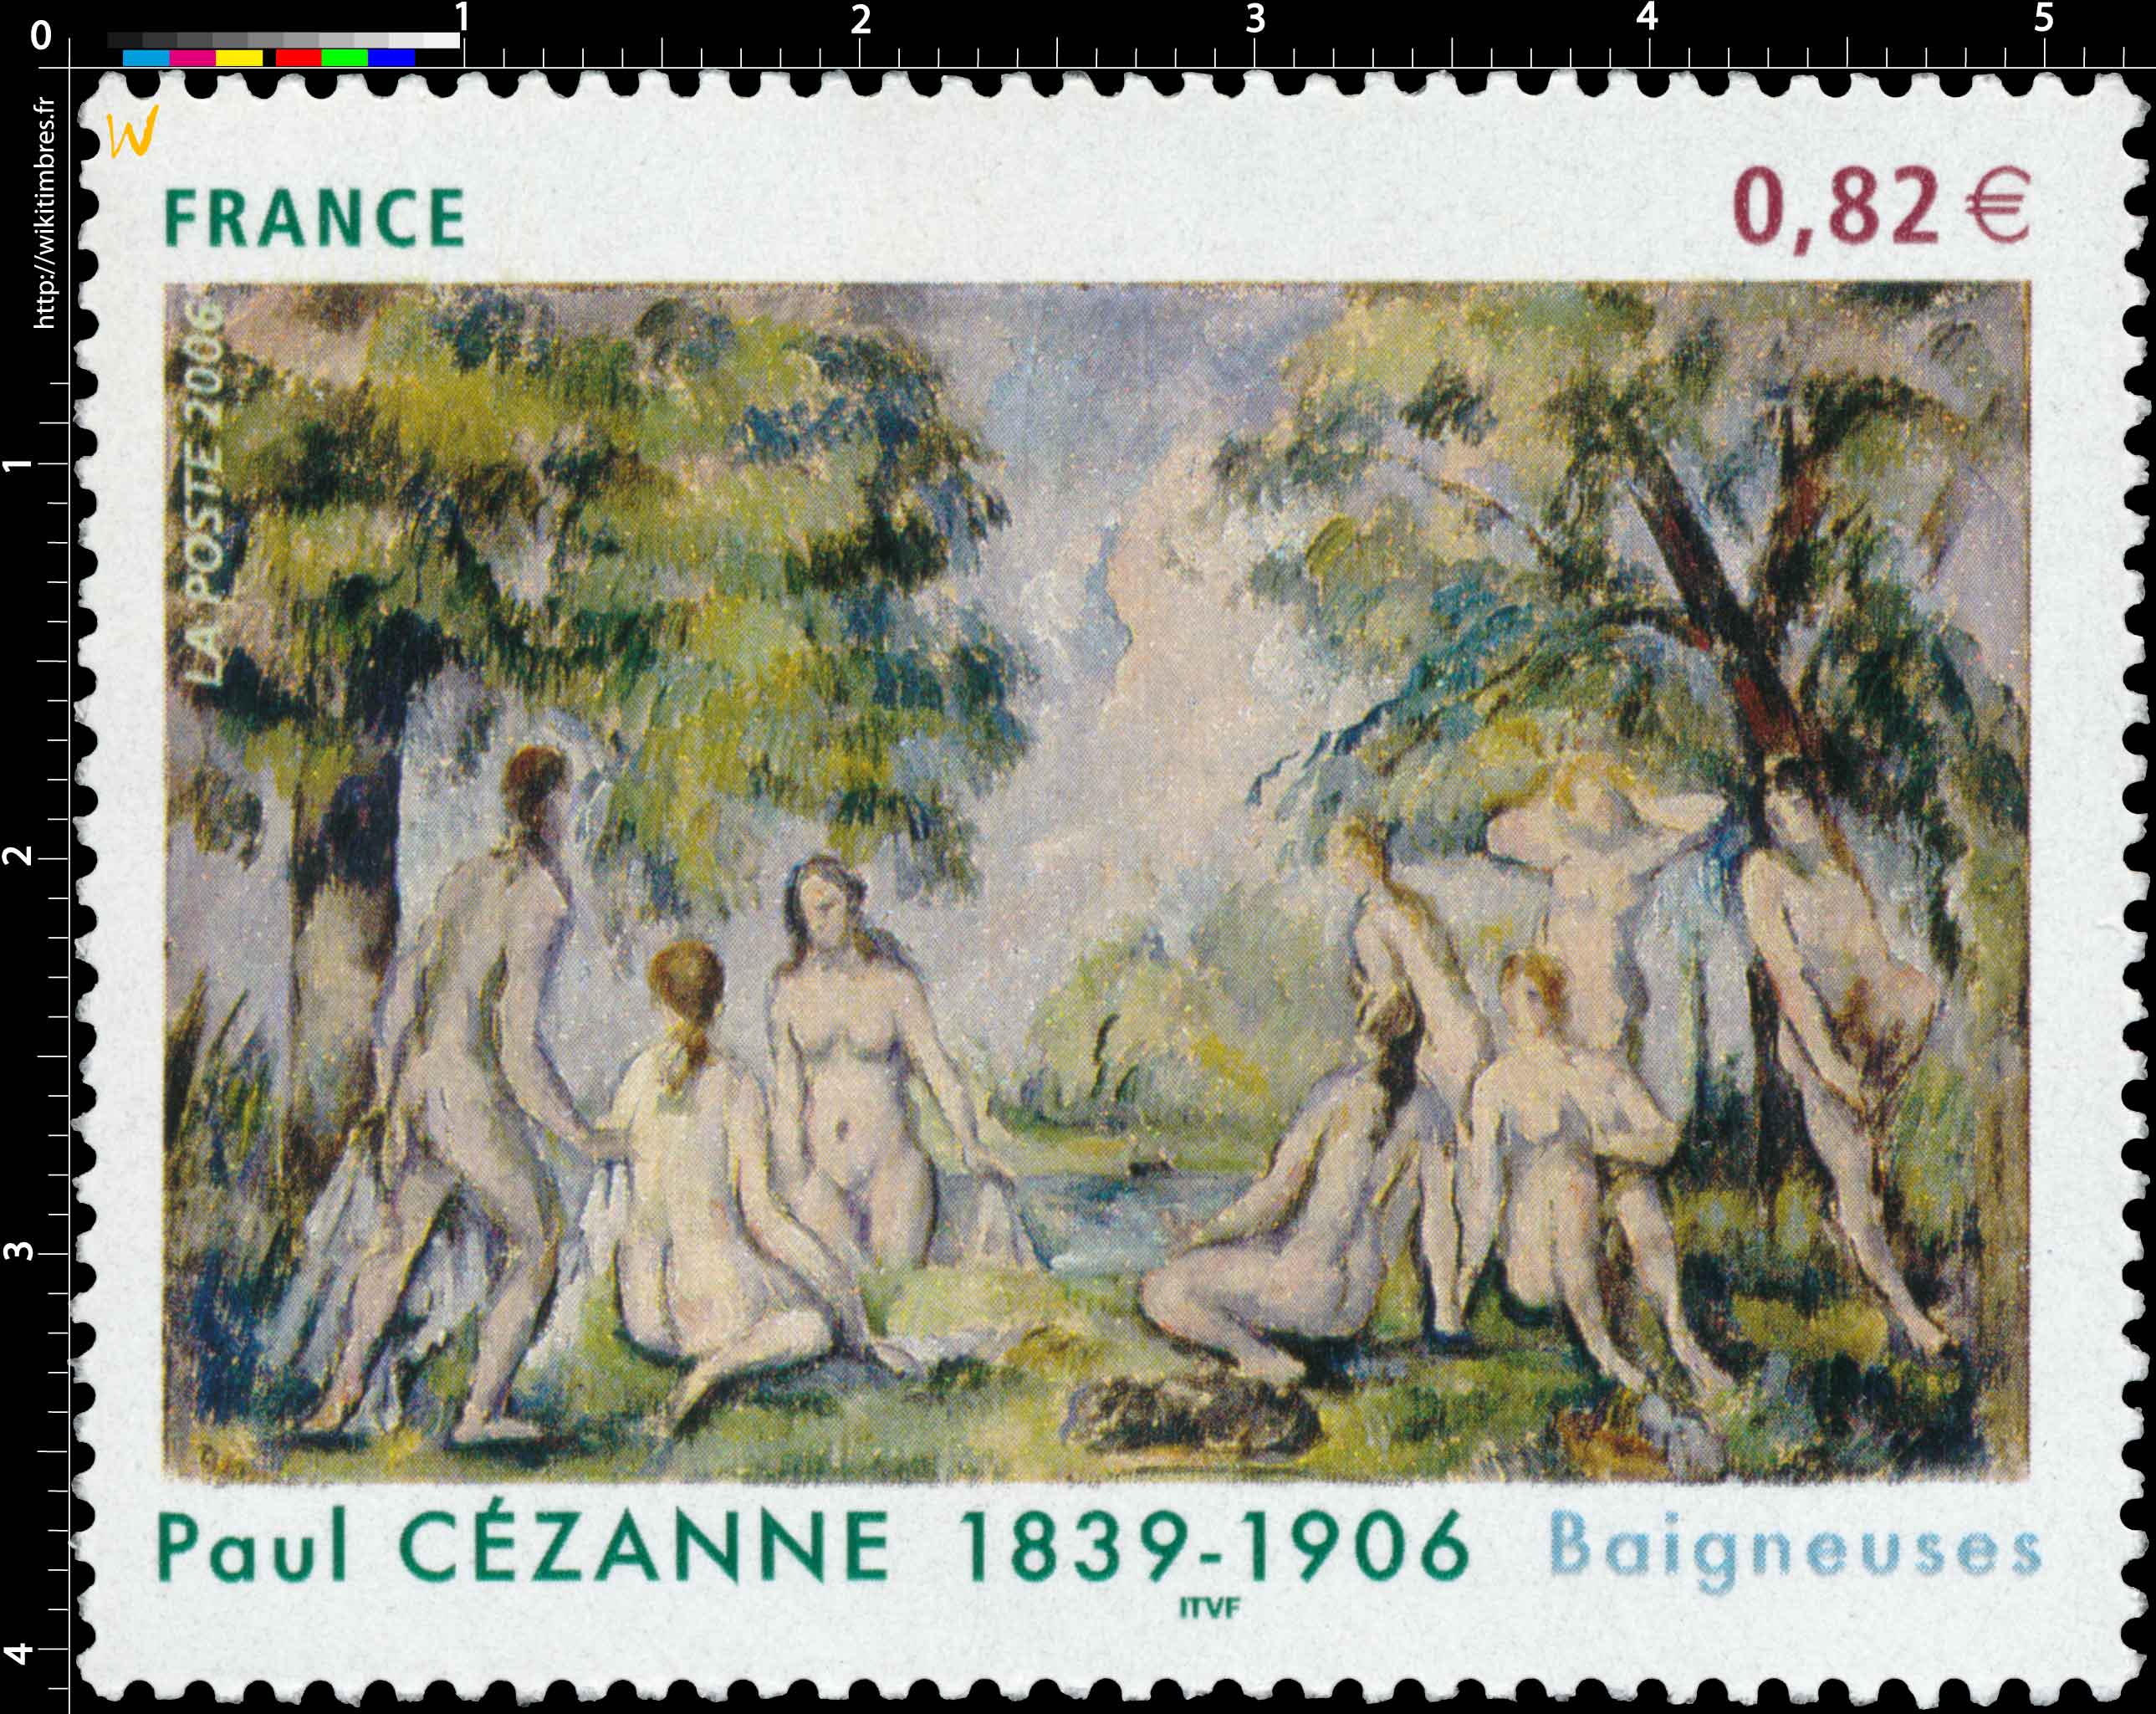 2006 Paul CÉZANNE 1839-1906 Baigneuses